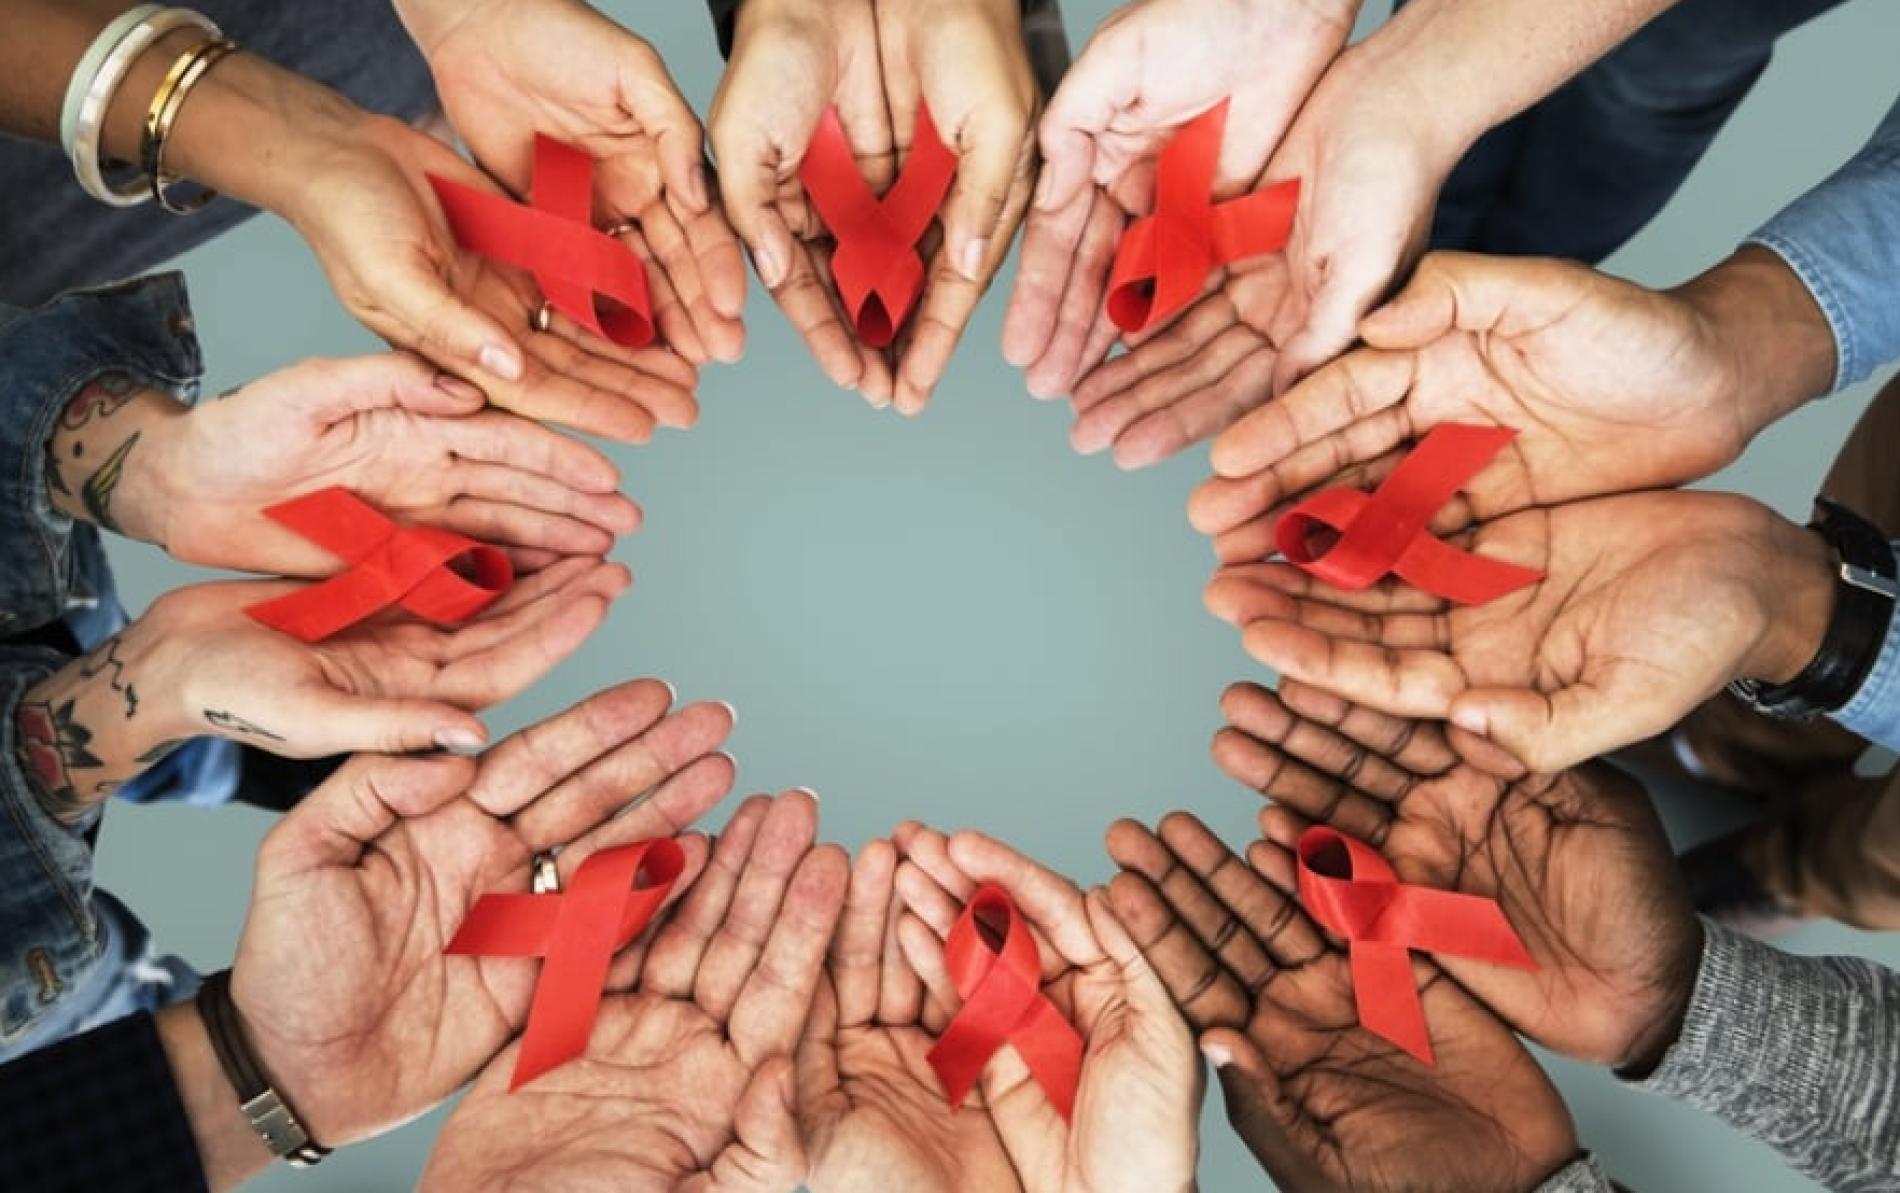 Lotta all’Aids: il Drop In e la campagna nei locali